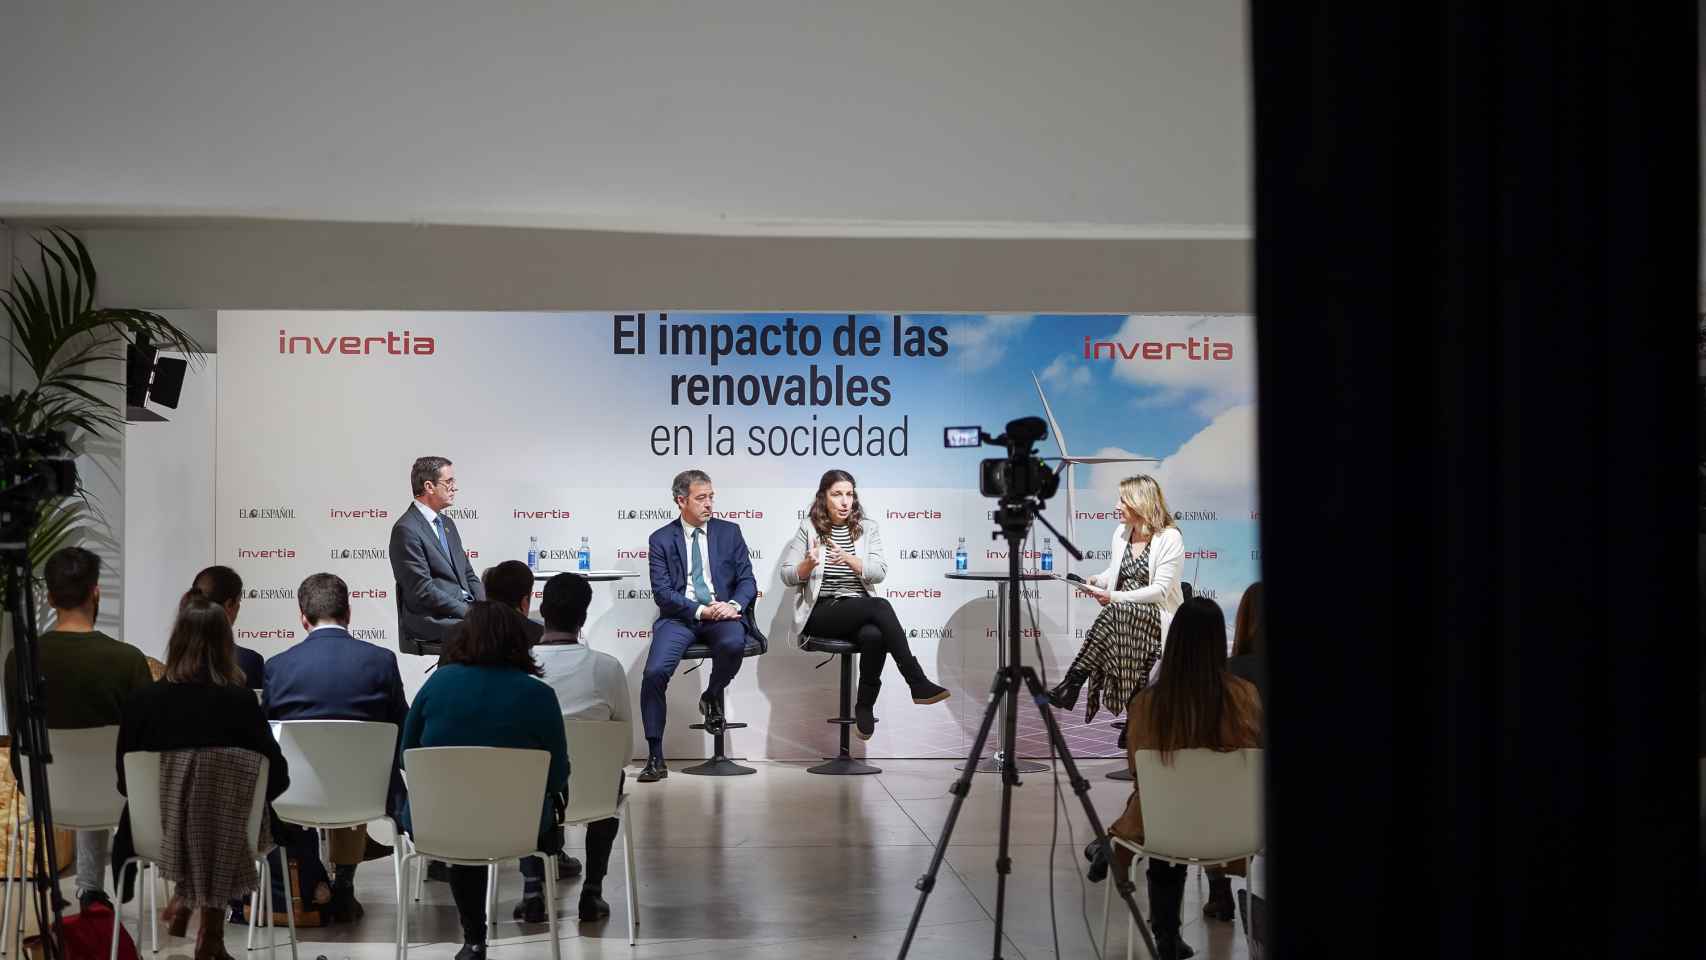 Felix Peinado, director de OIT España, José María González Moya, director general de APPA Renovables, y Eva Saldaña, directora ejecutiva de Greenpeace España.